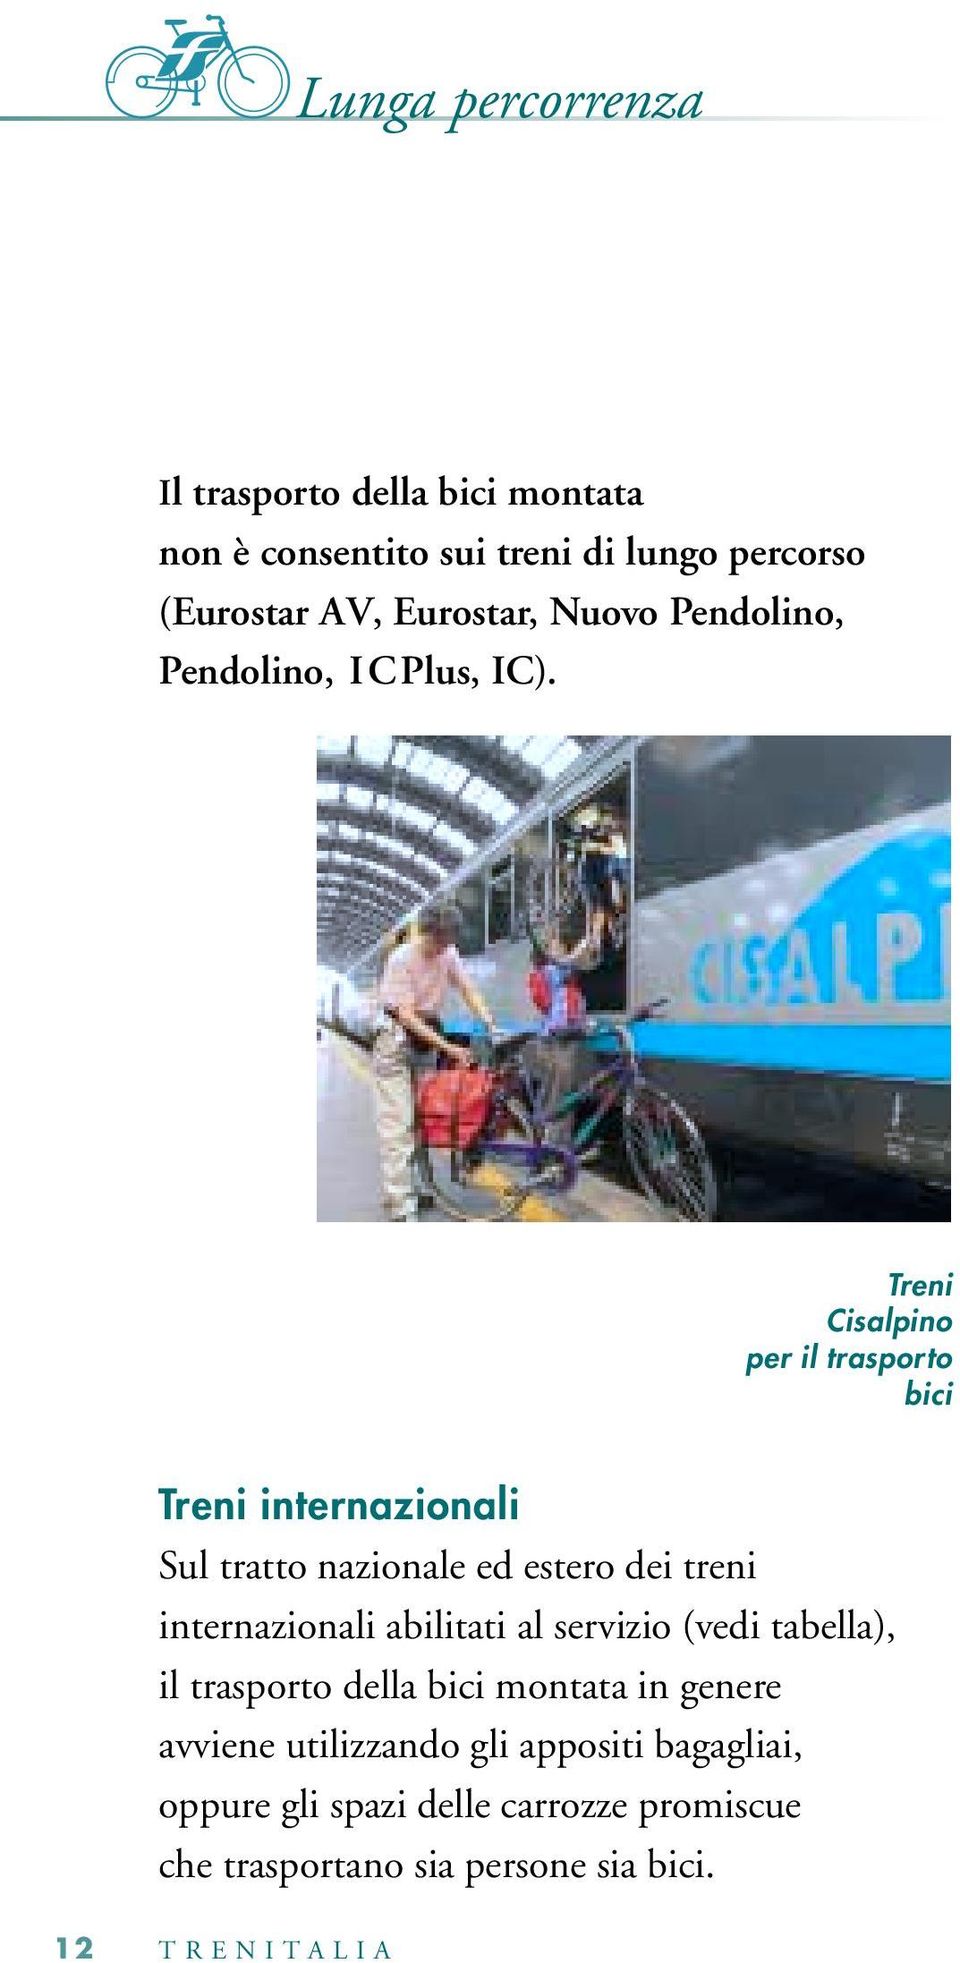 Treni Cisalpino per il trasporto bici Treni internazionali Sul tratto nazionale ed estero dei treni internazionali